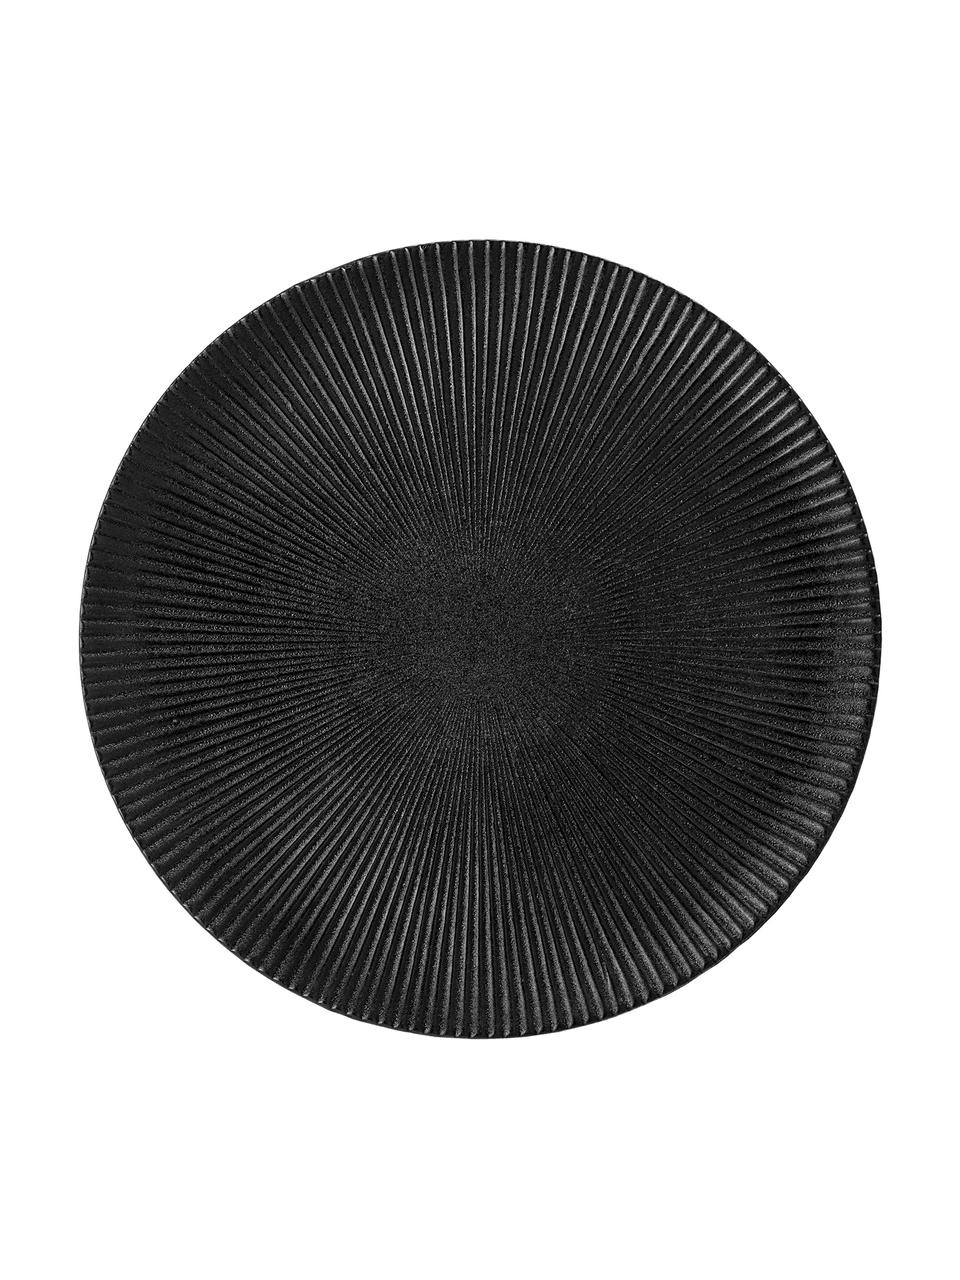 Plato llano con relieve Neri, Gres
Con estructura de surcos y superficie ligeramente rugosa, Negro, Ø 29 cm